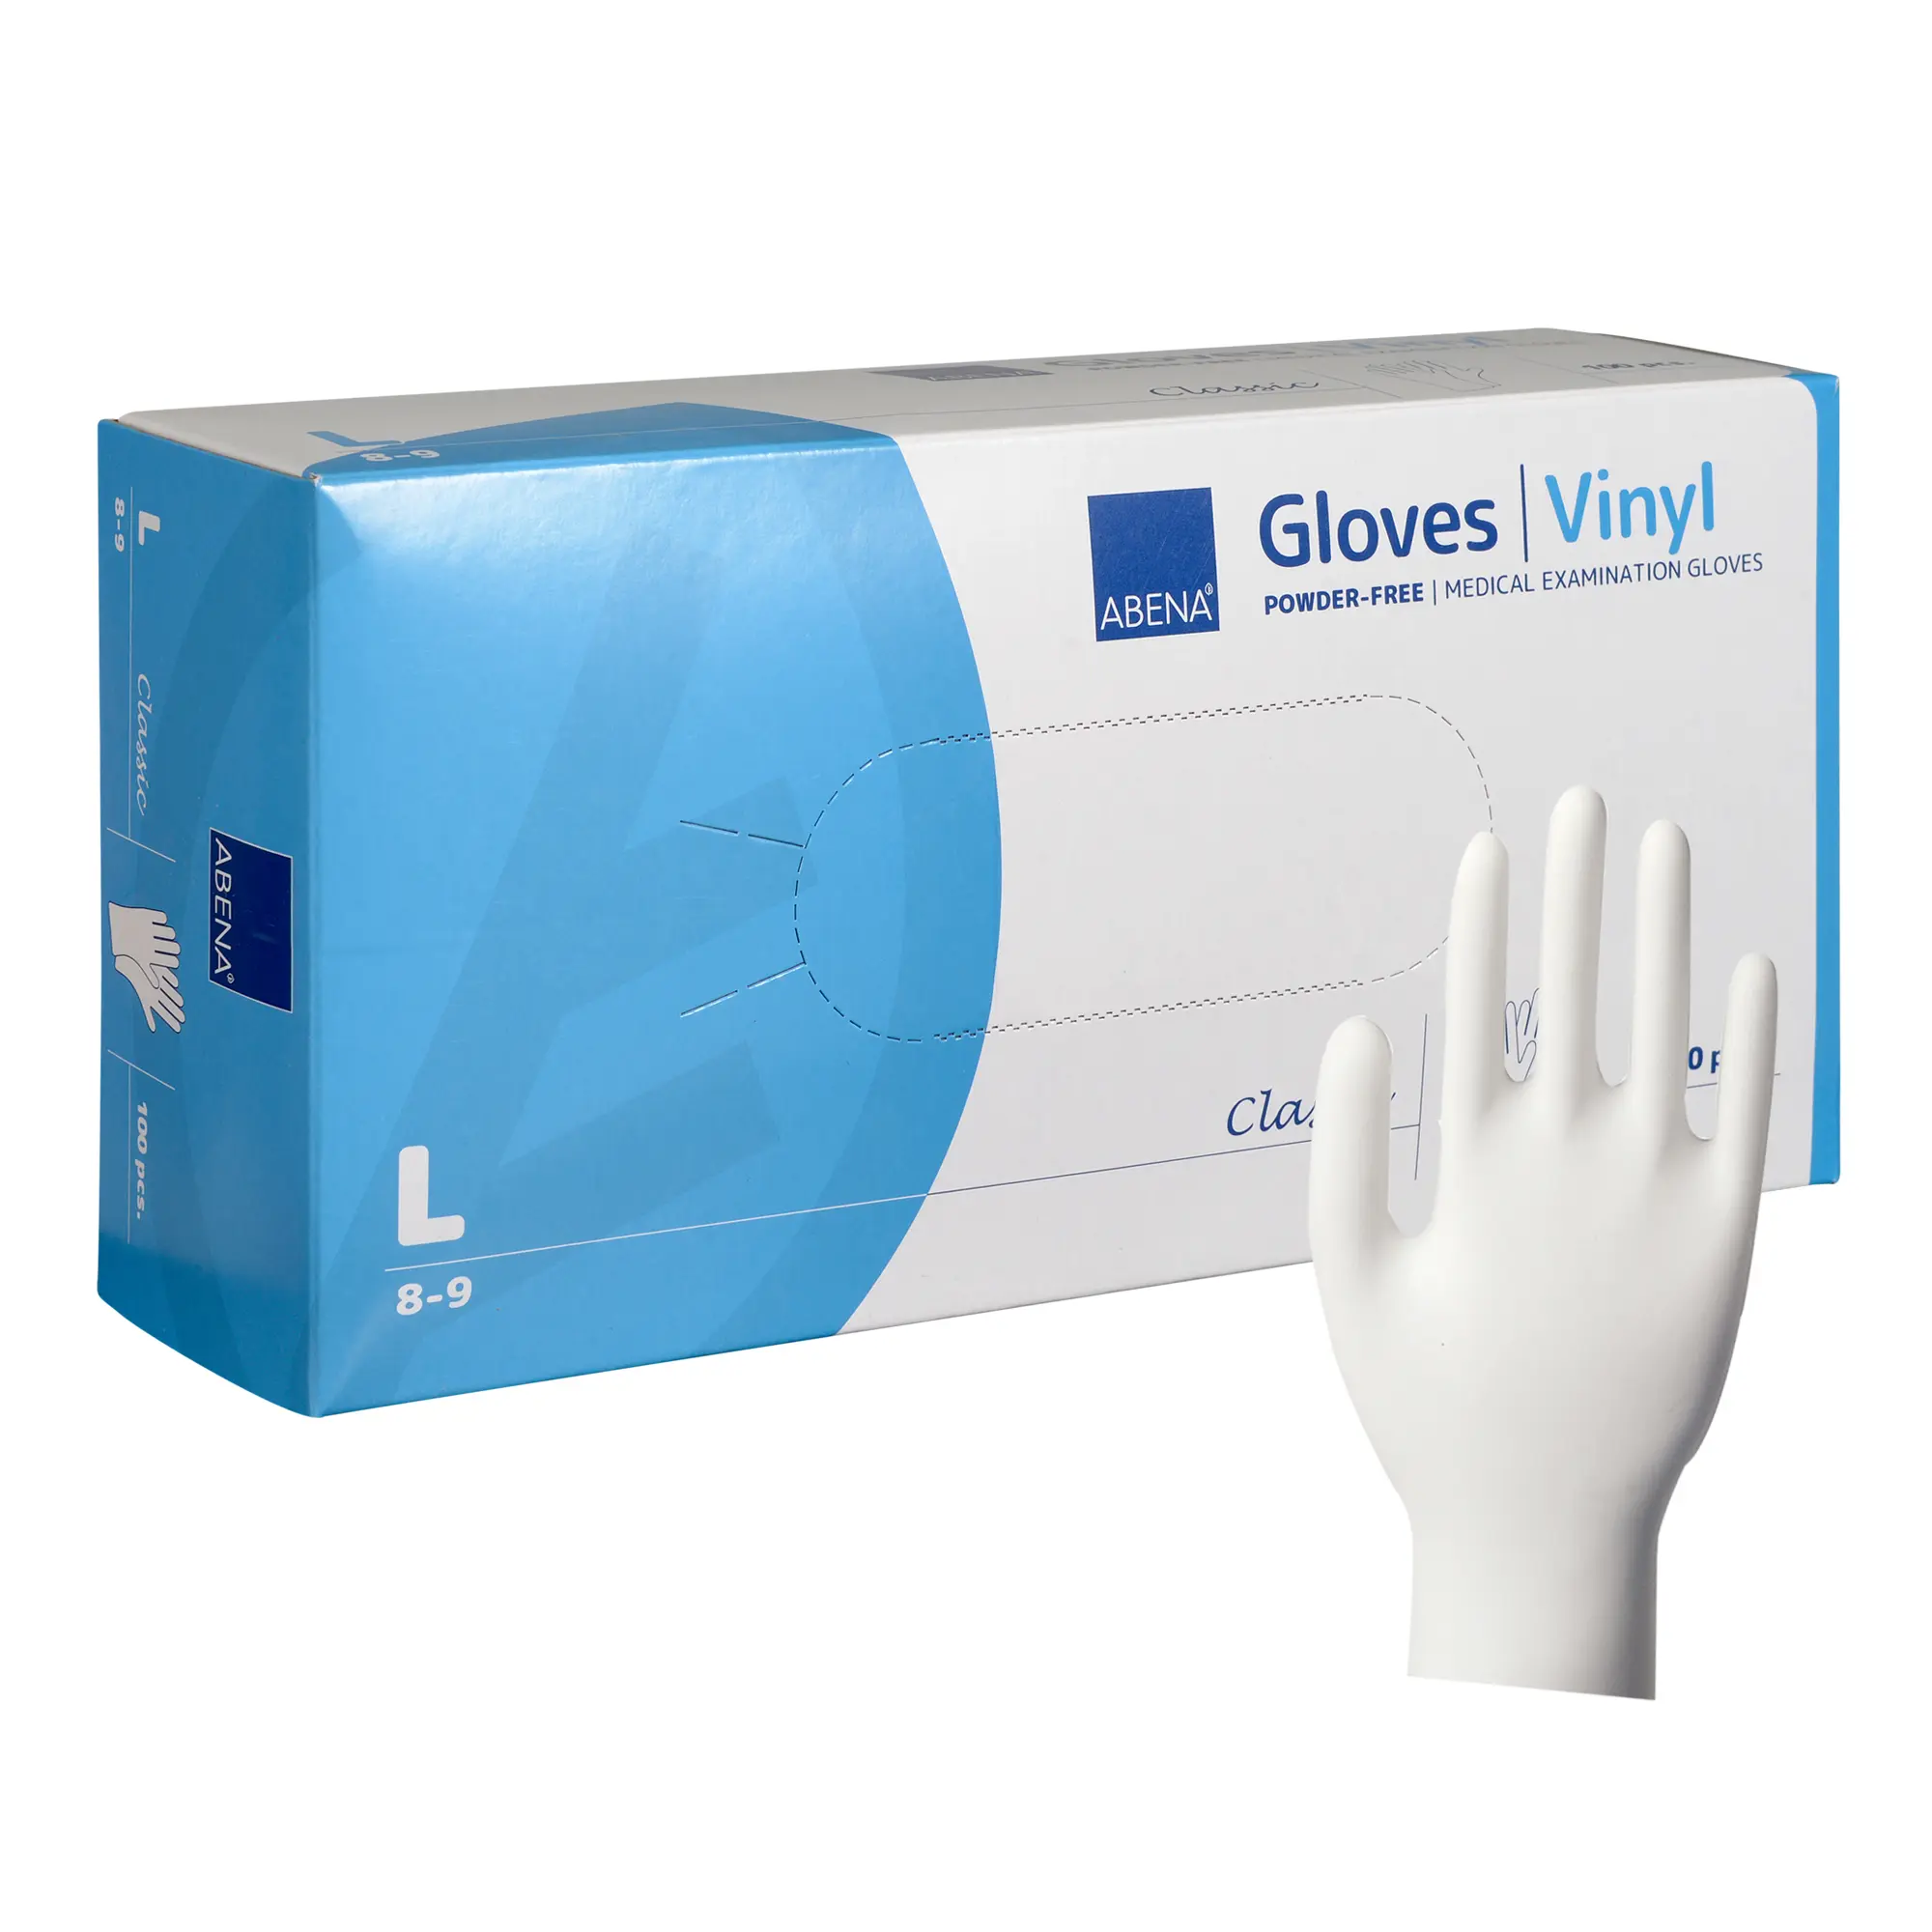 ABENA Vinyl-Handschuhe transparent, ungepudert 100 Stück L 4426_1